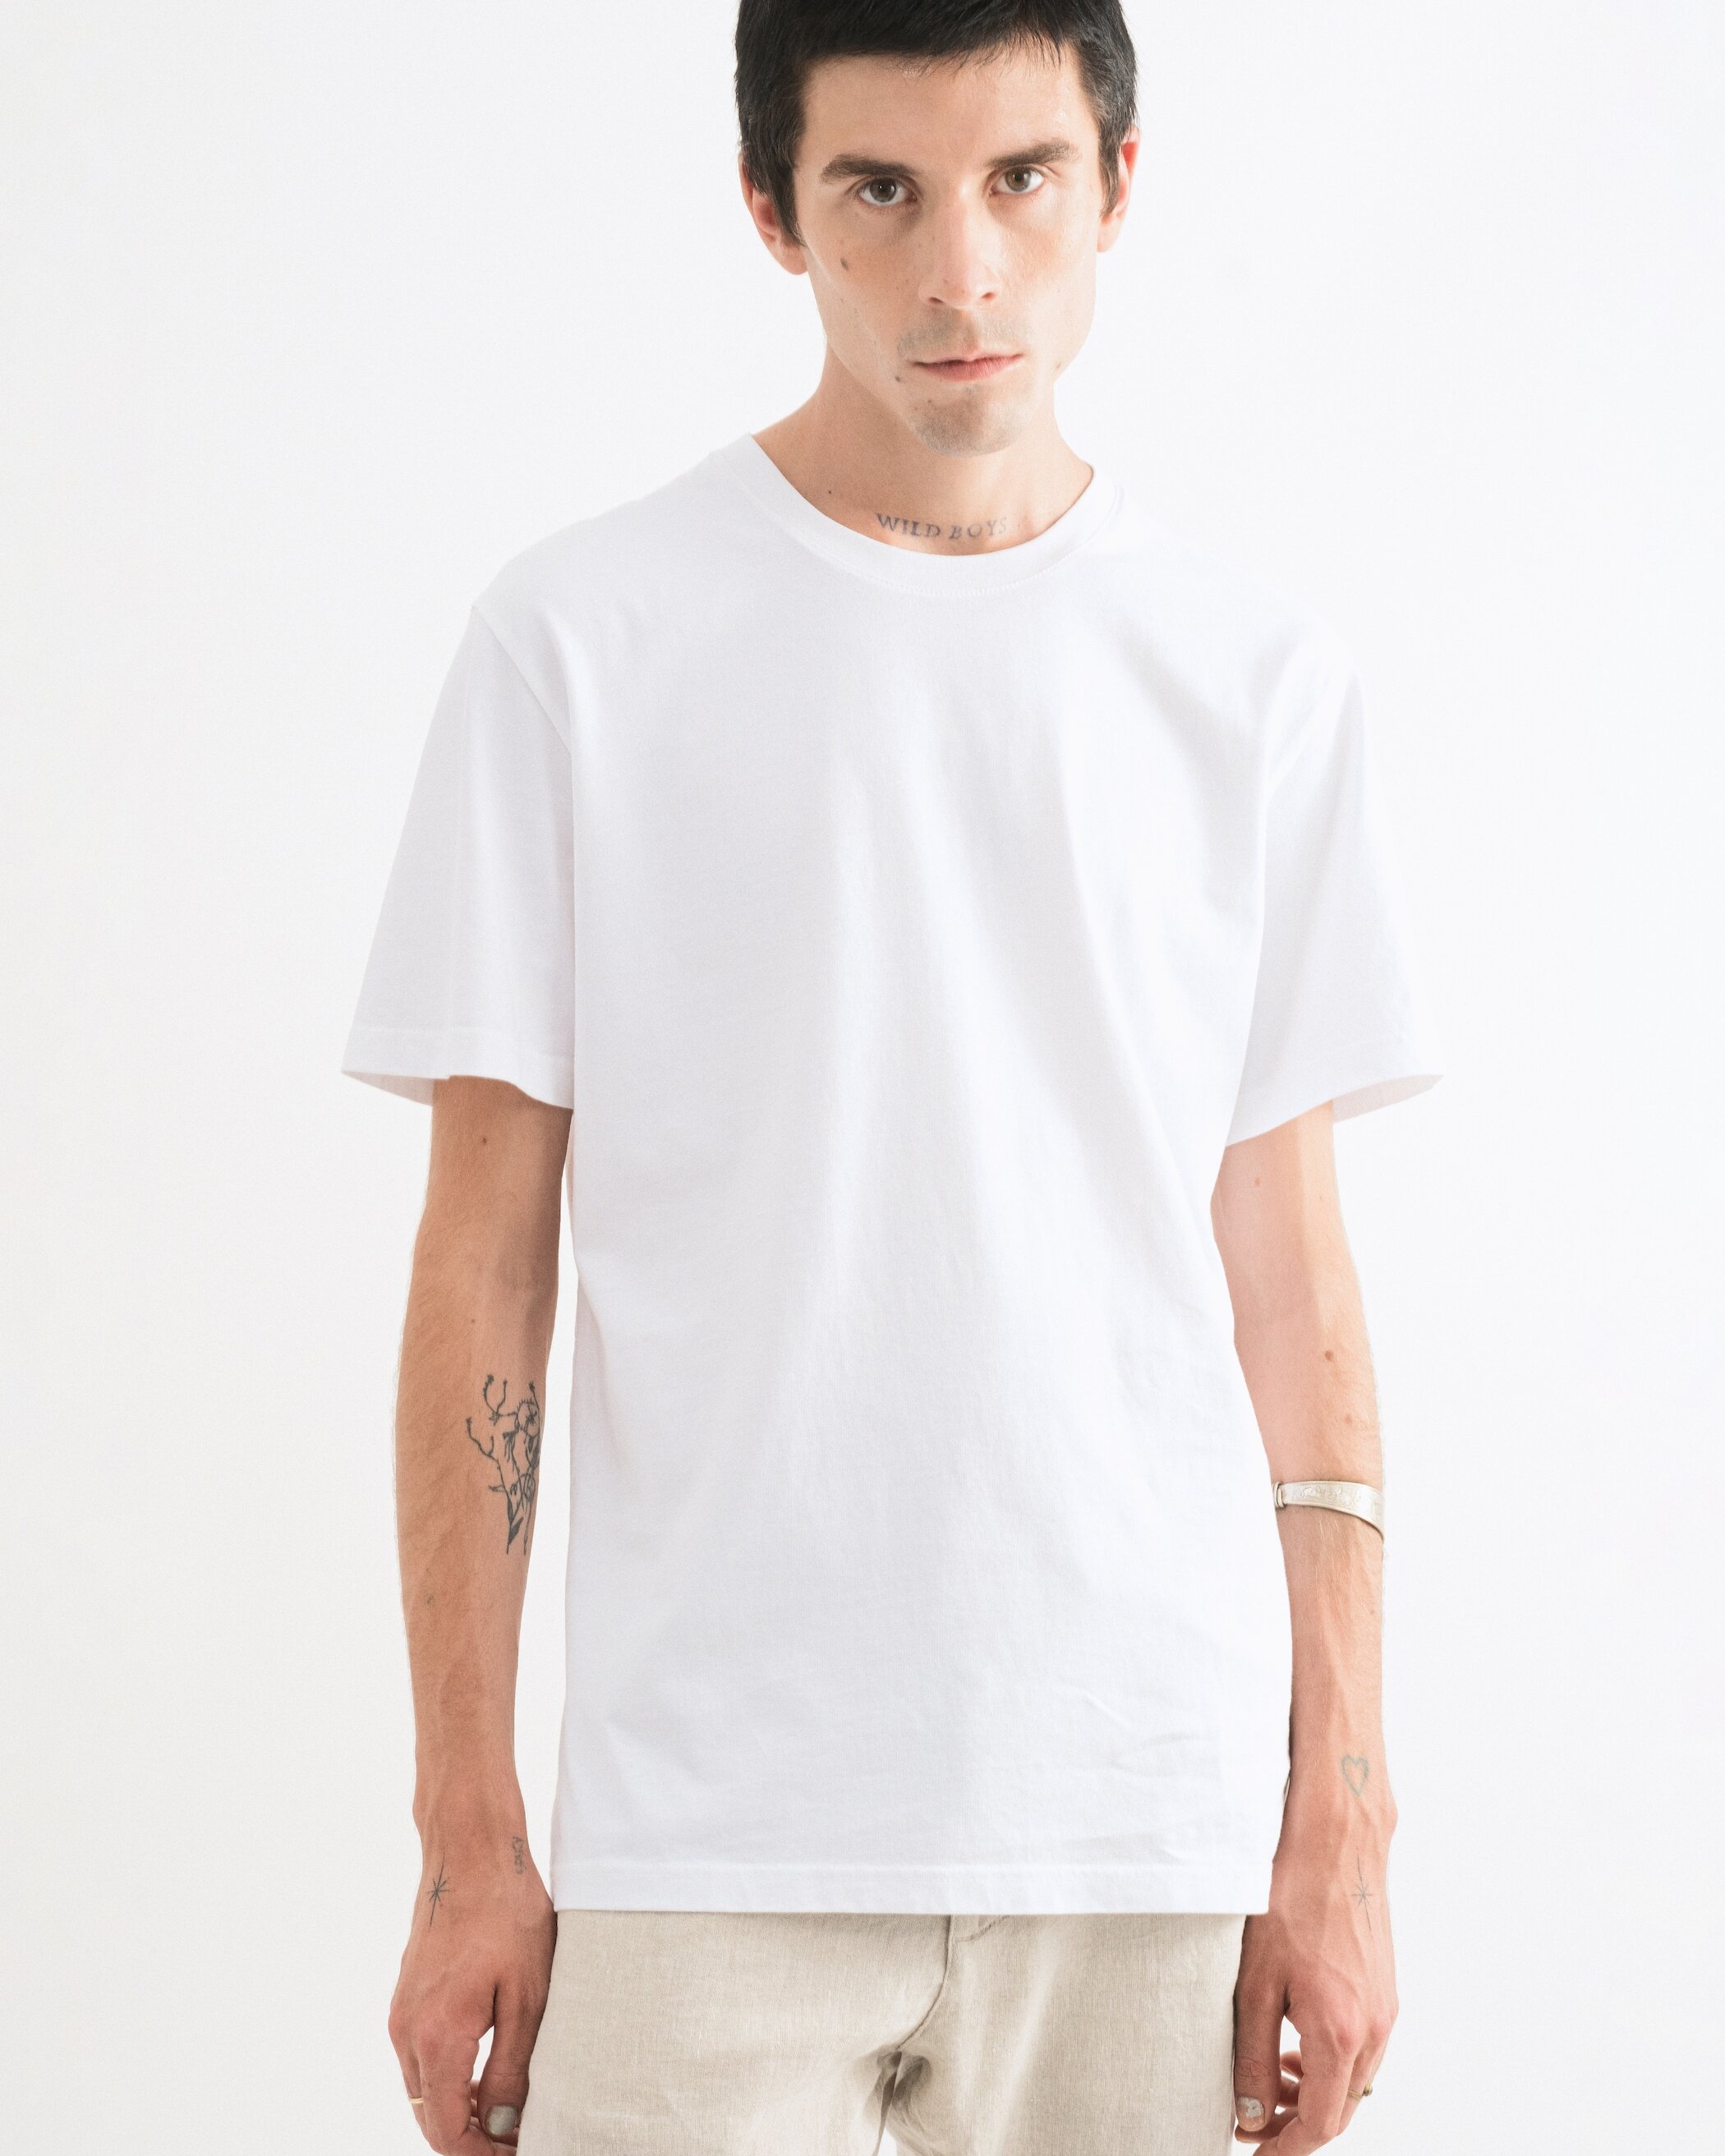 Glein - Heavy Cotton T-Shirt